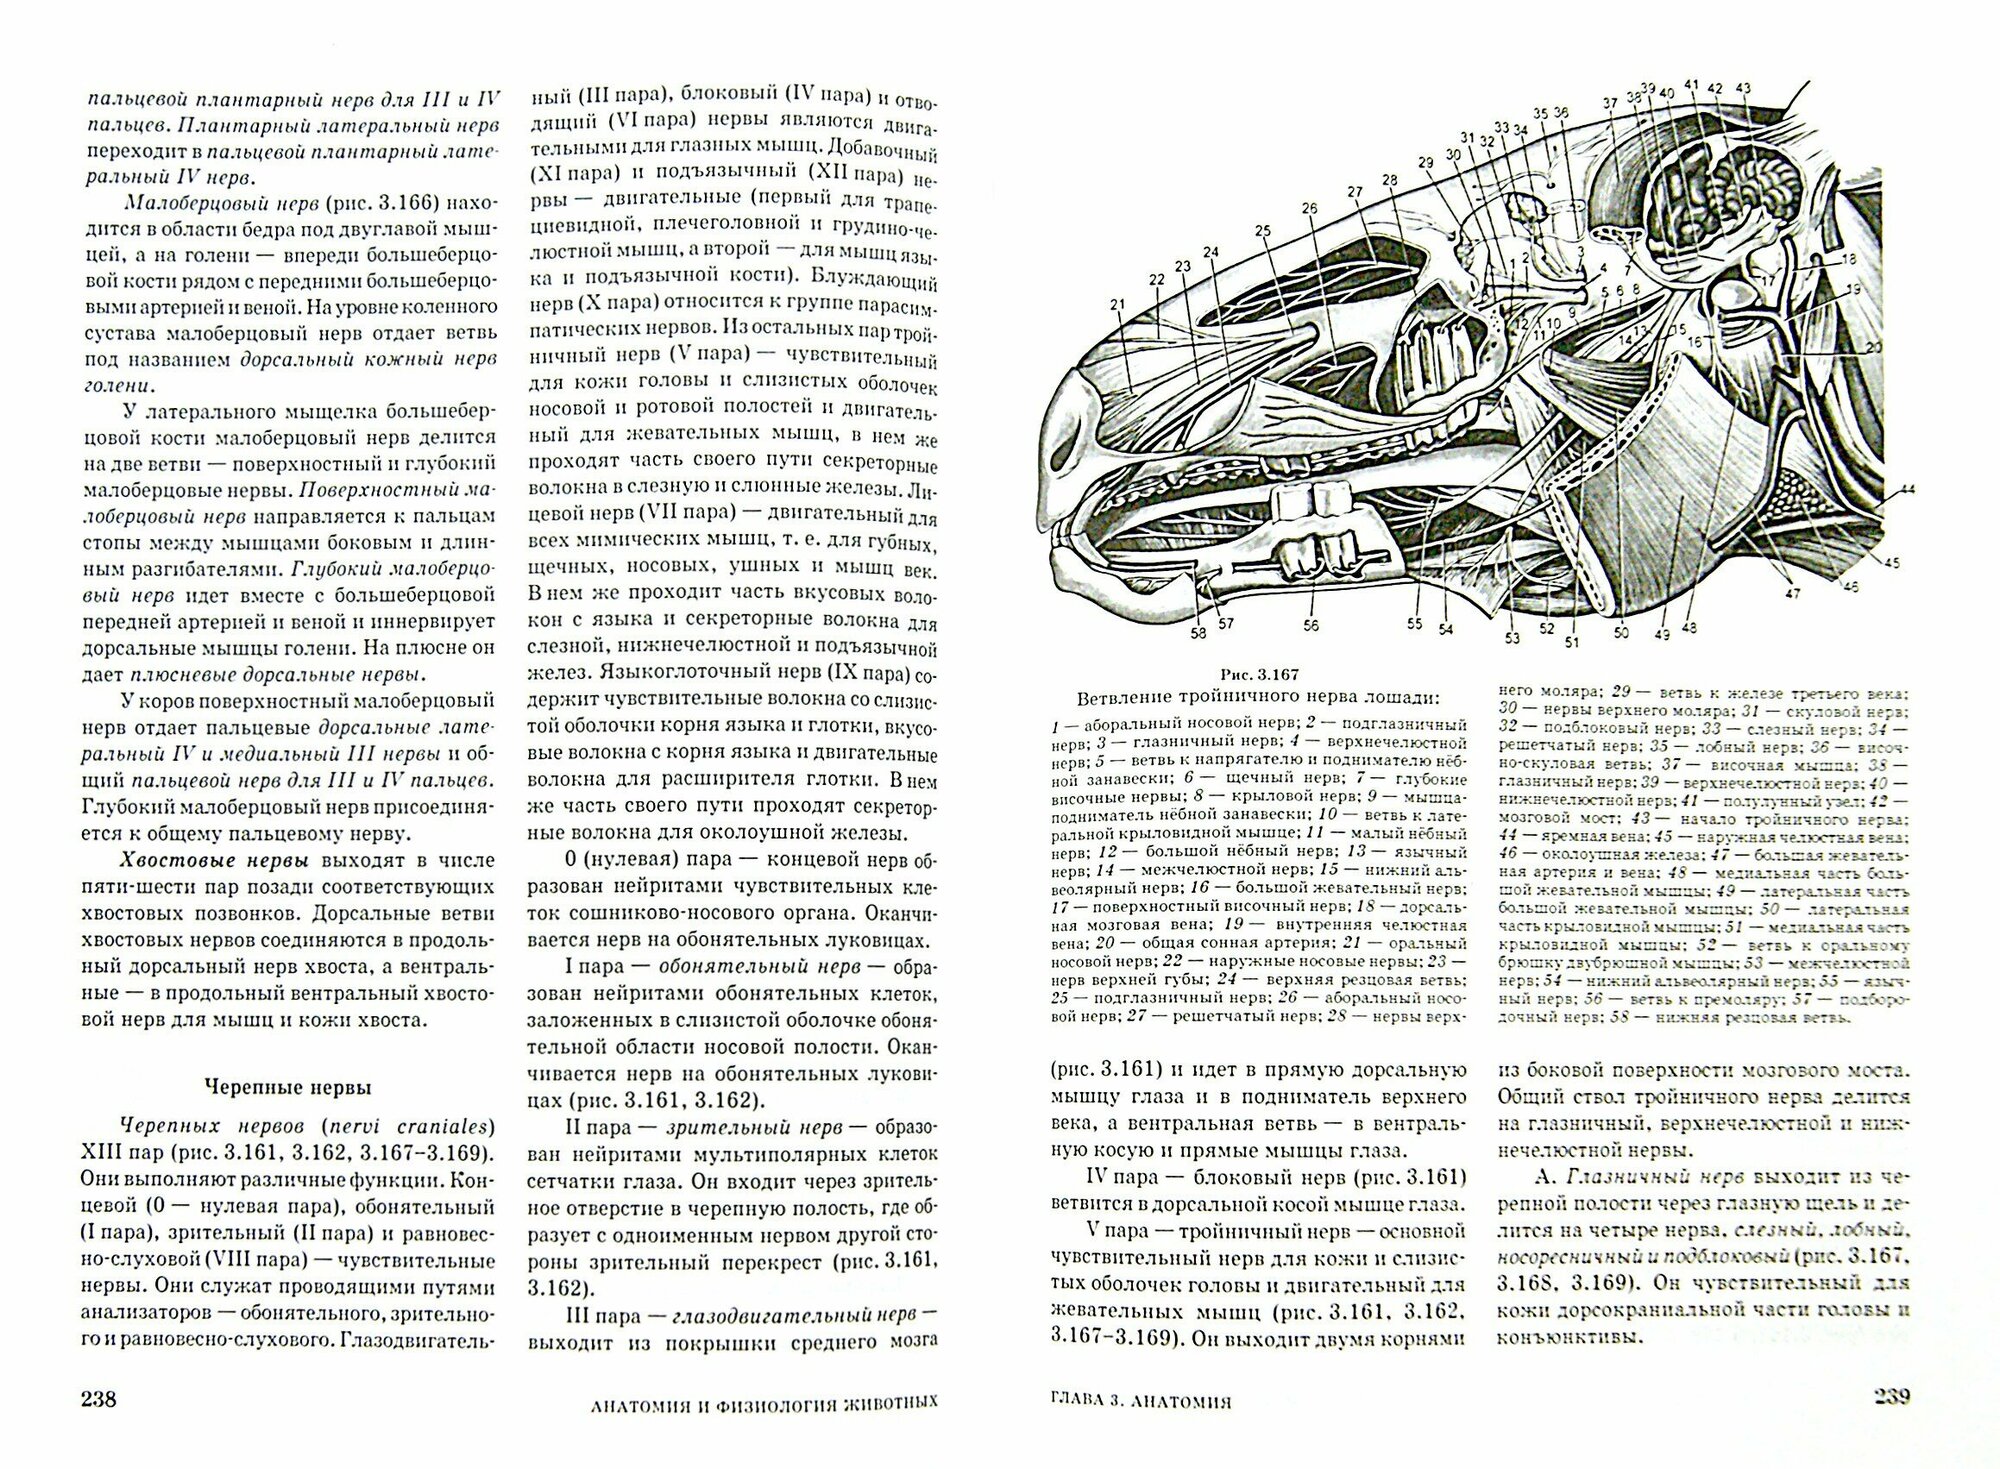 Анатомия и физиология животных. Учебник для СПО - фото №3